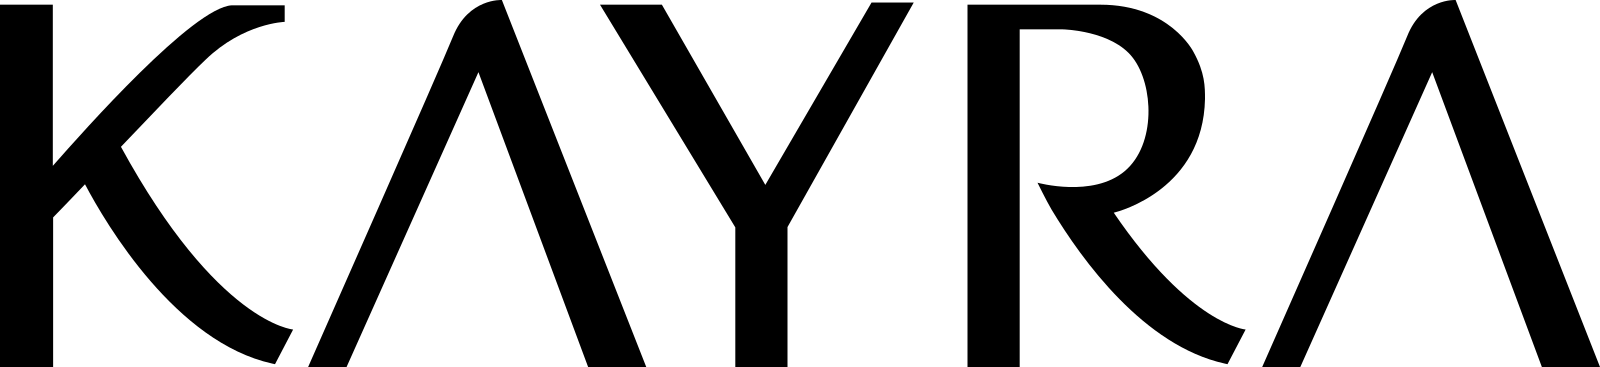 kayra logo